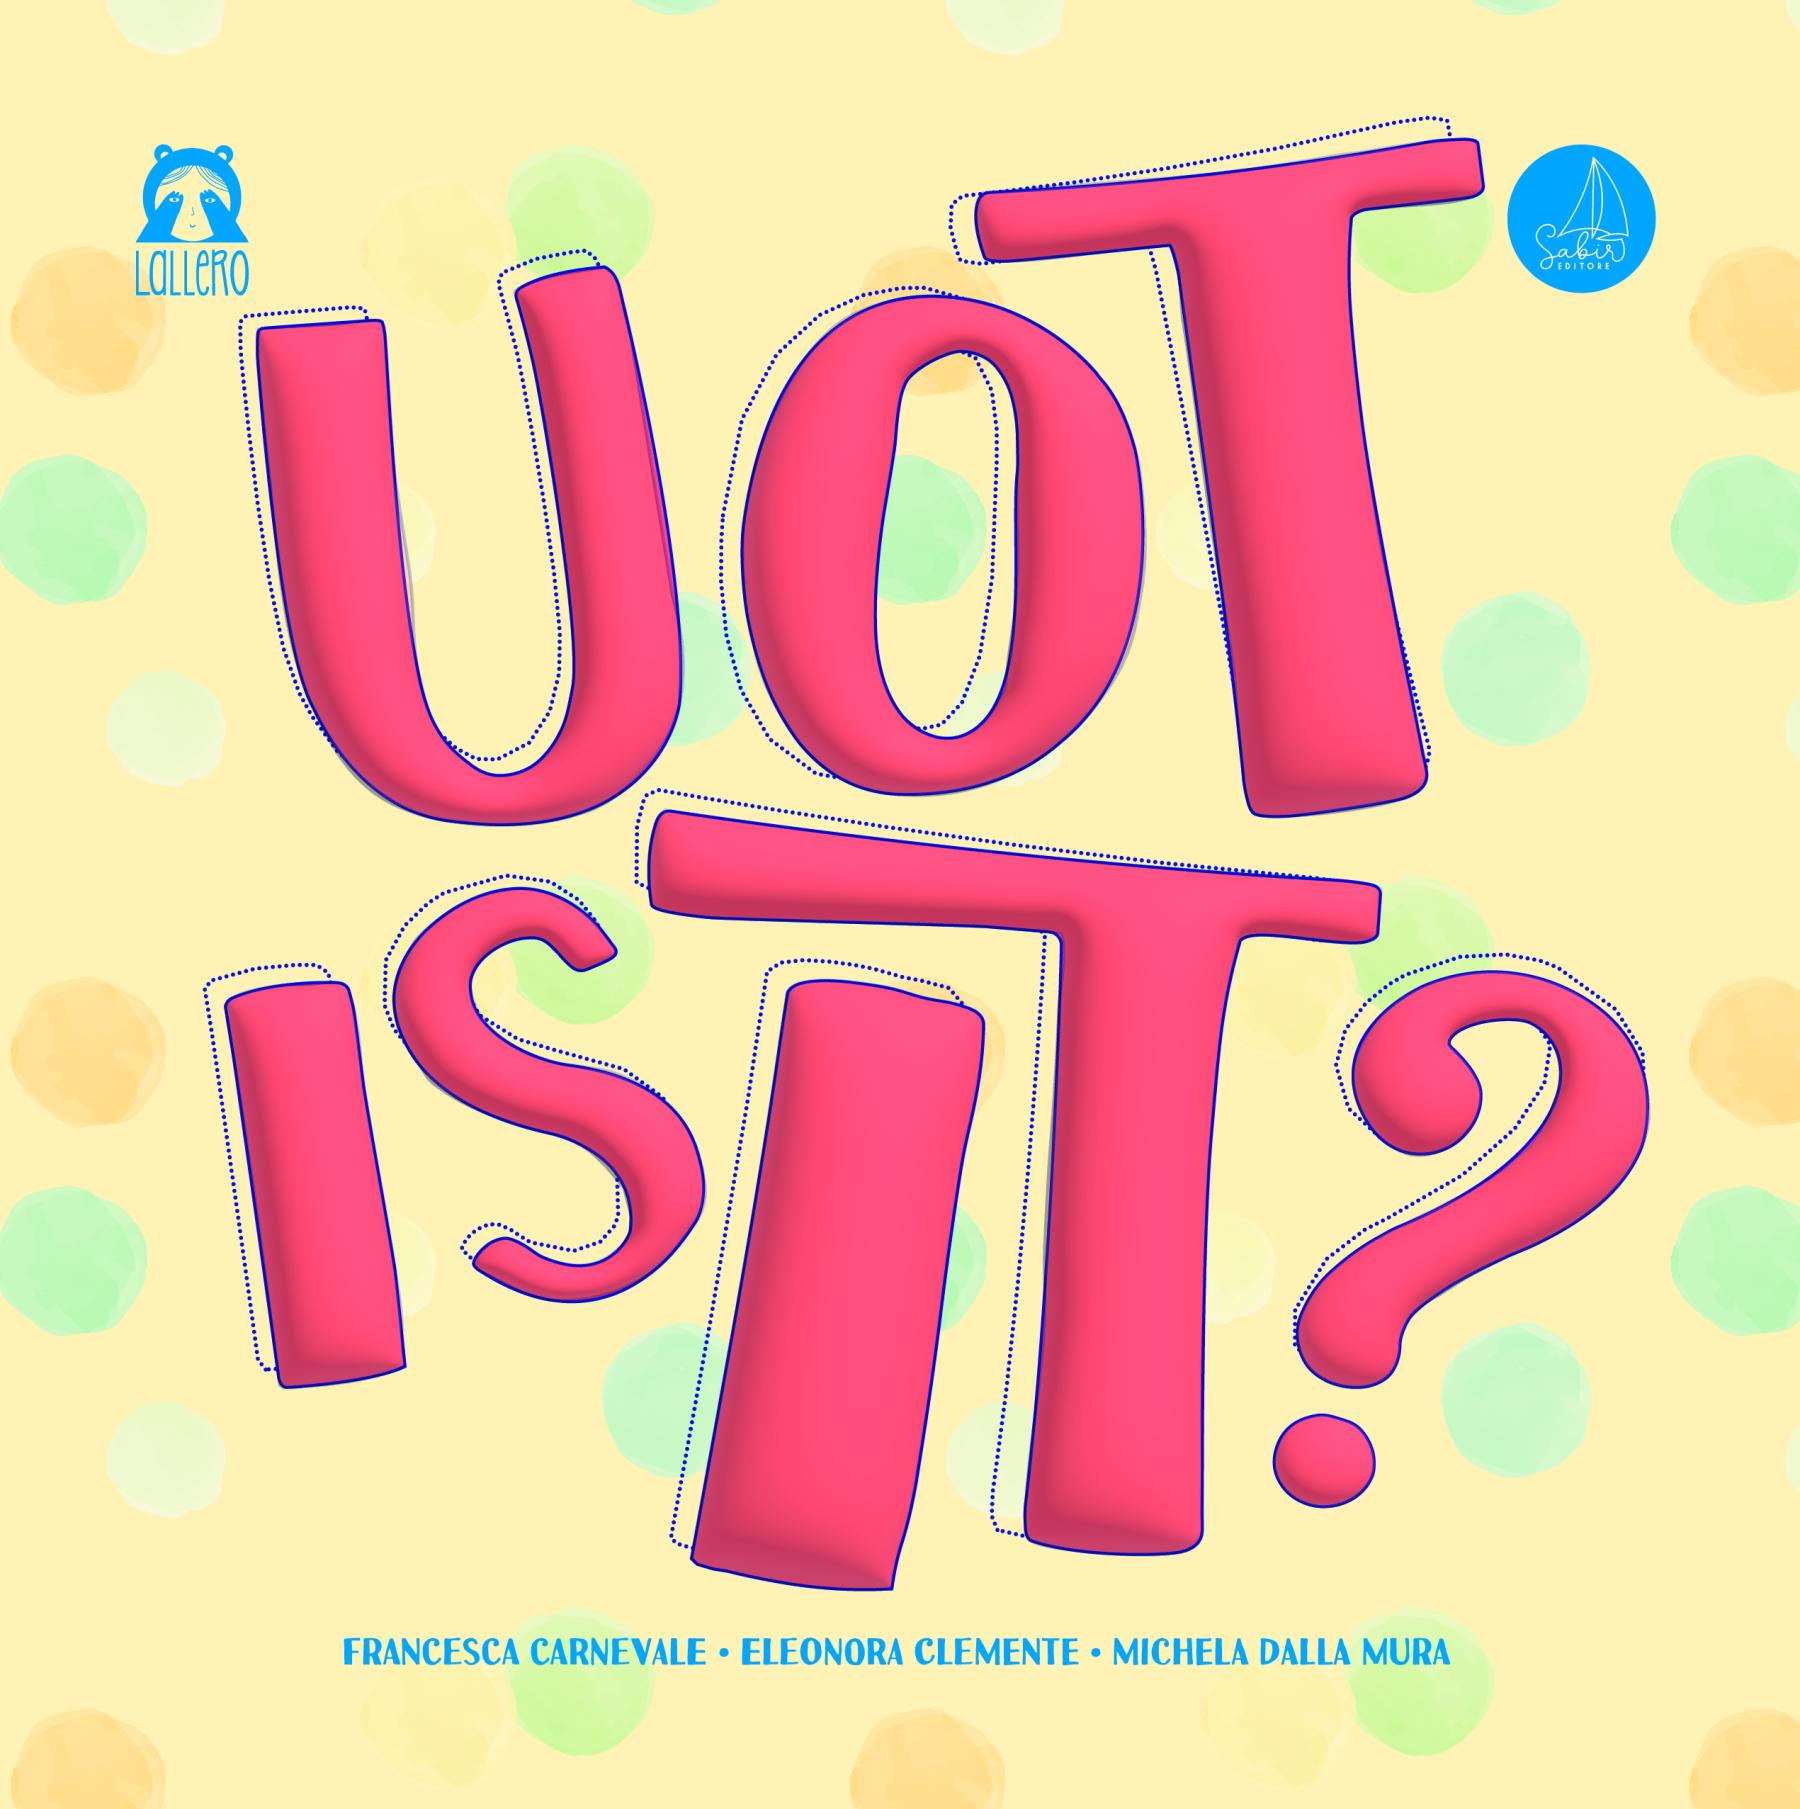 uot-is-it